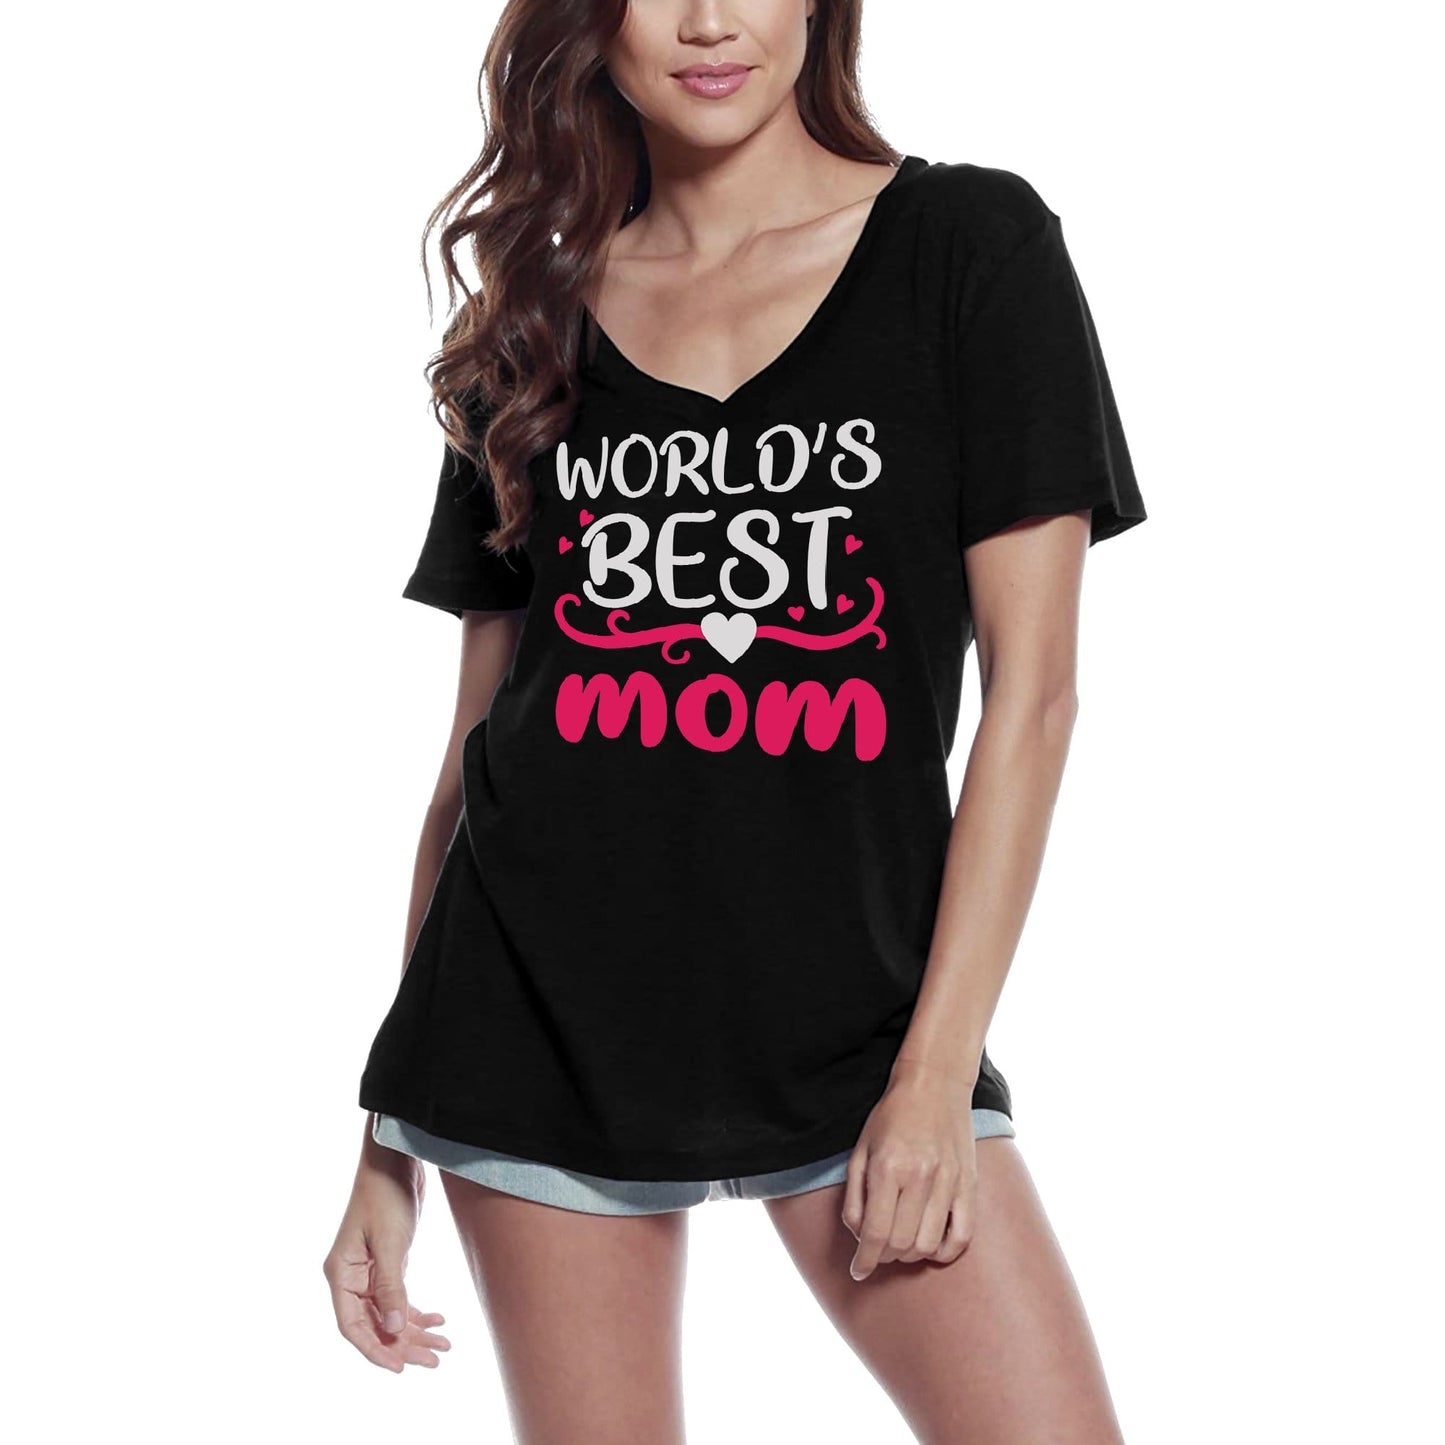 ULTRABASIC Women's T-Shirt World's Best Mom - Heart Short Sleeve Tee Shirt Tops